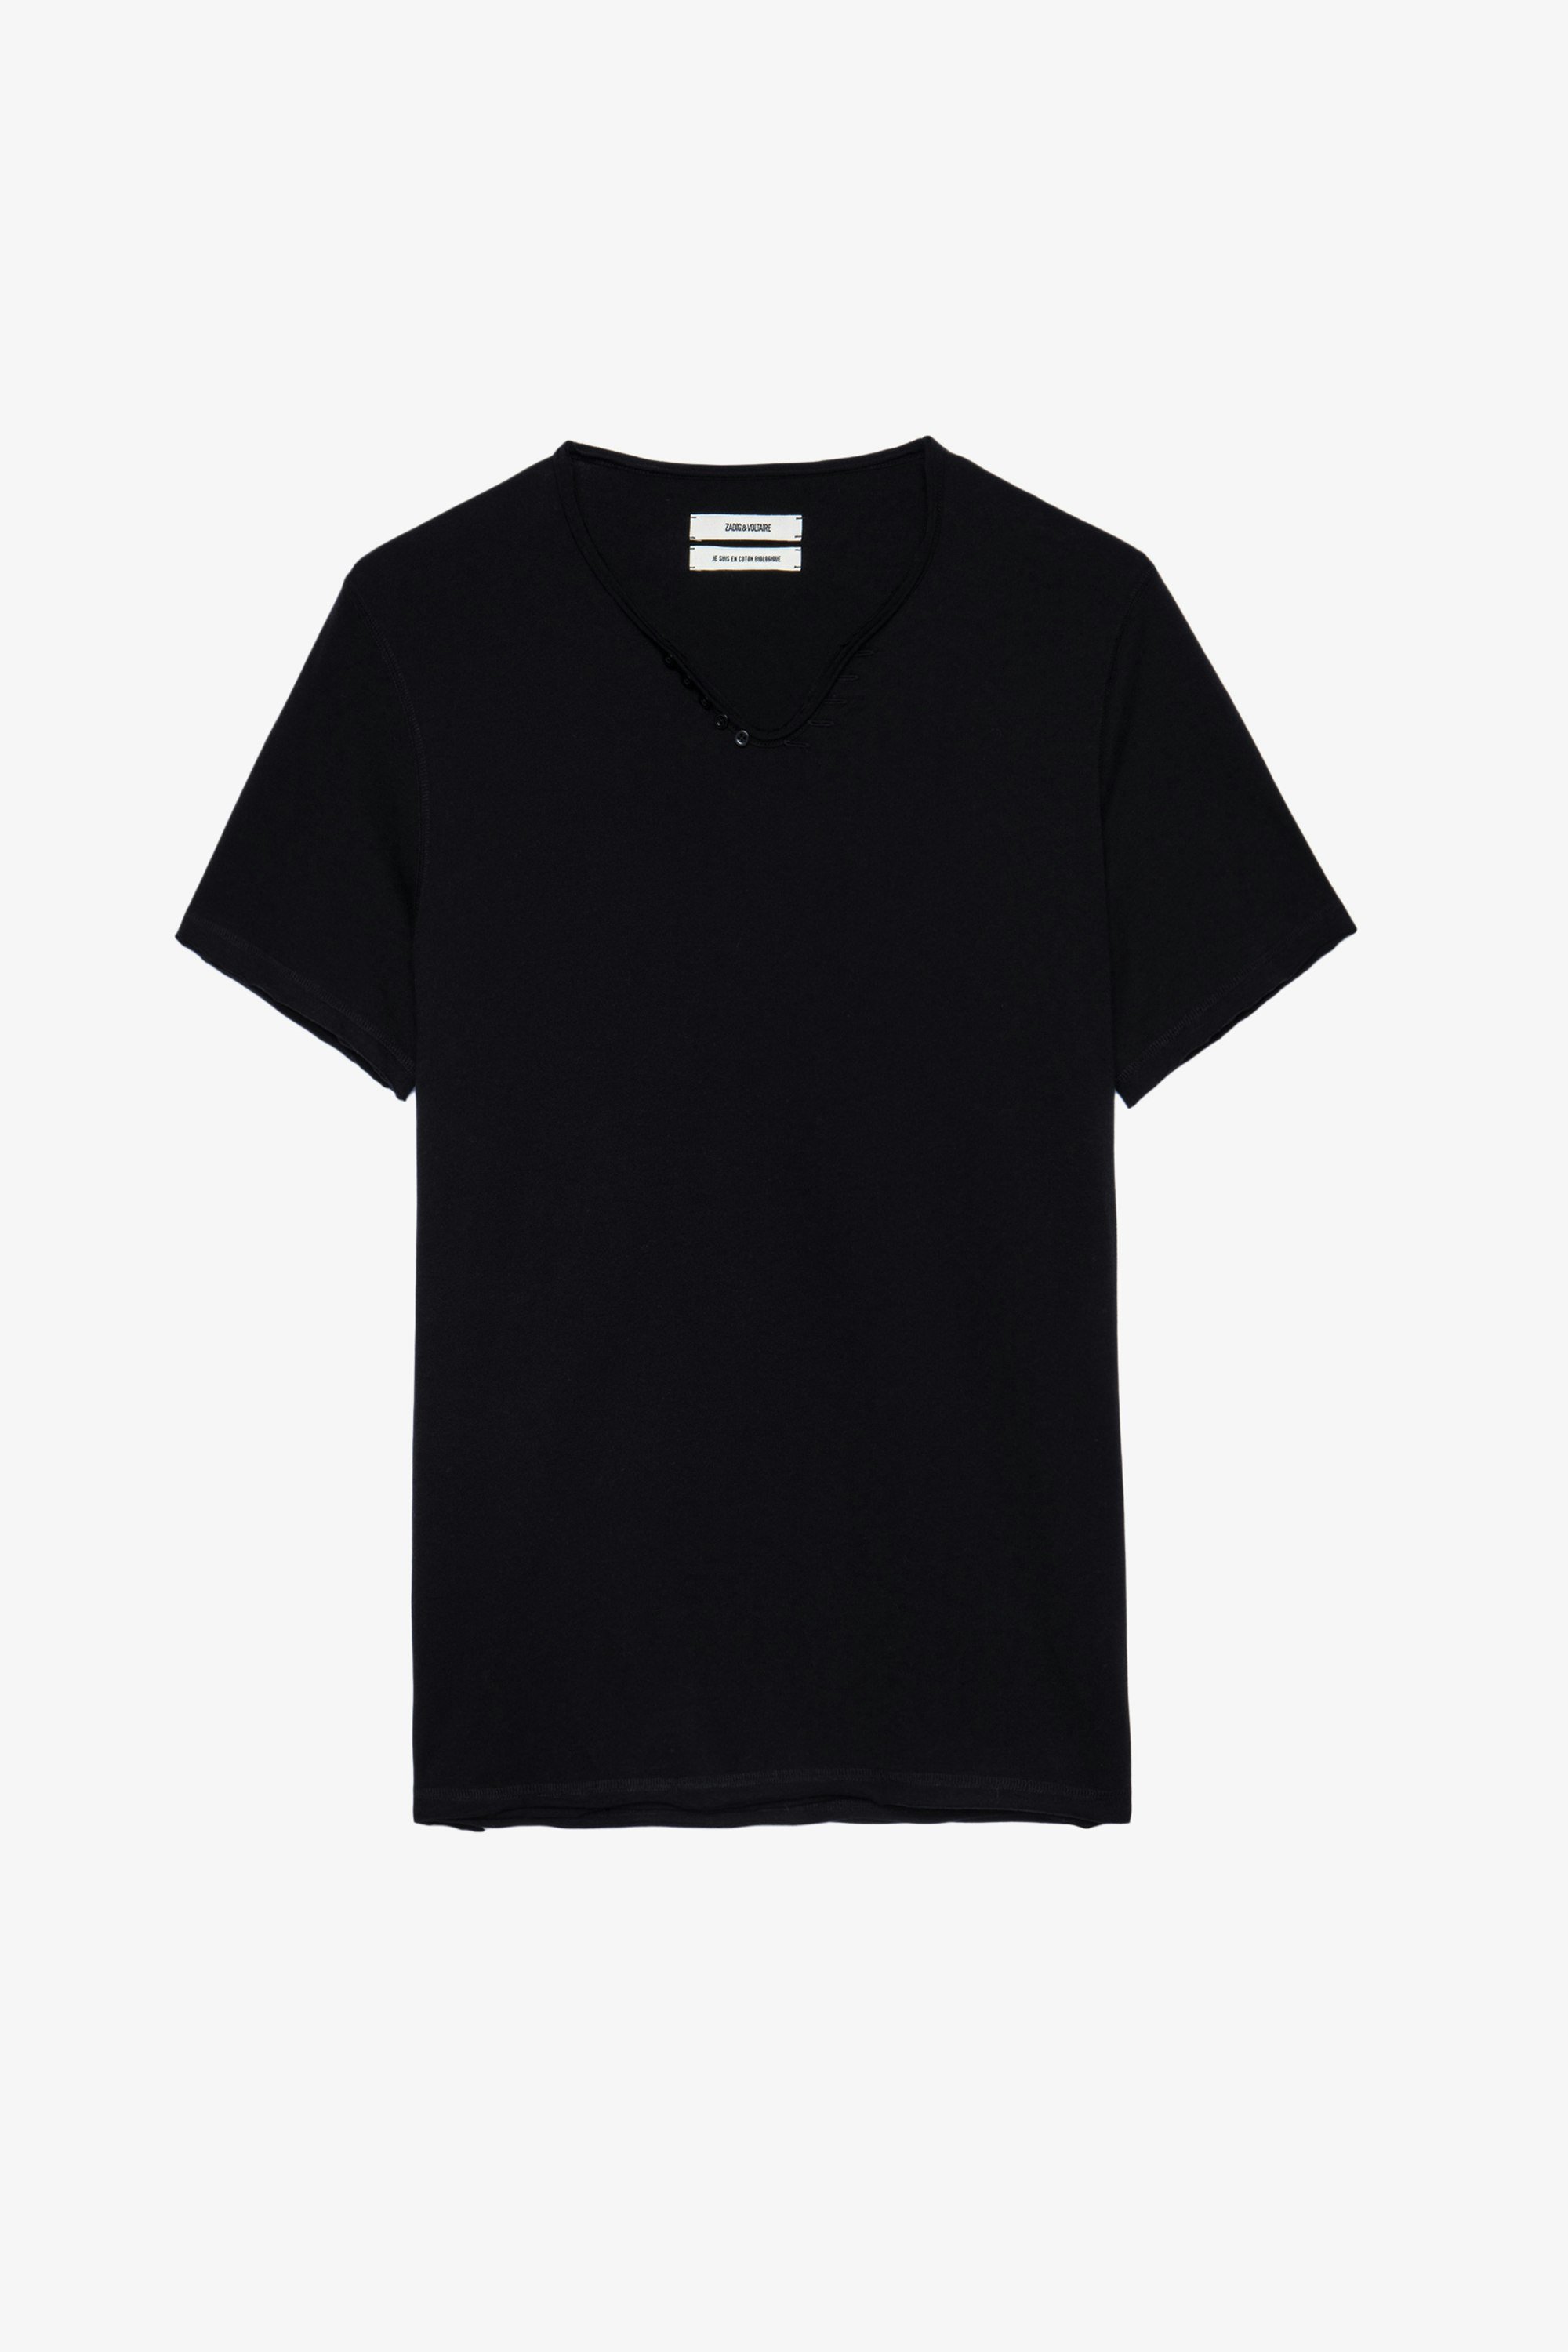 Henley-T-Shirt Monastir Schwarzes Herren-T-shirt aus Baumwolle mit Henley-Ausschnitt